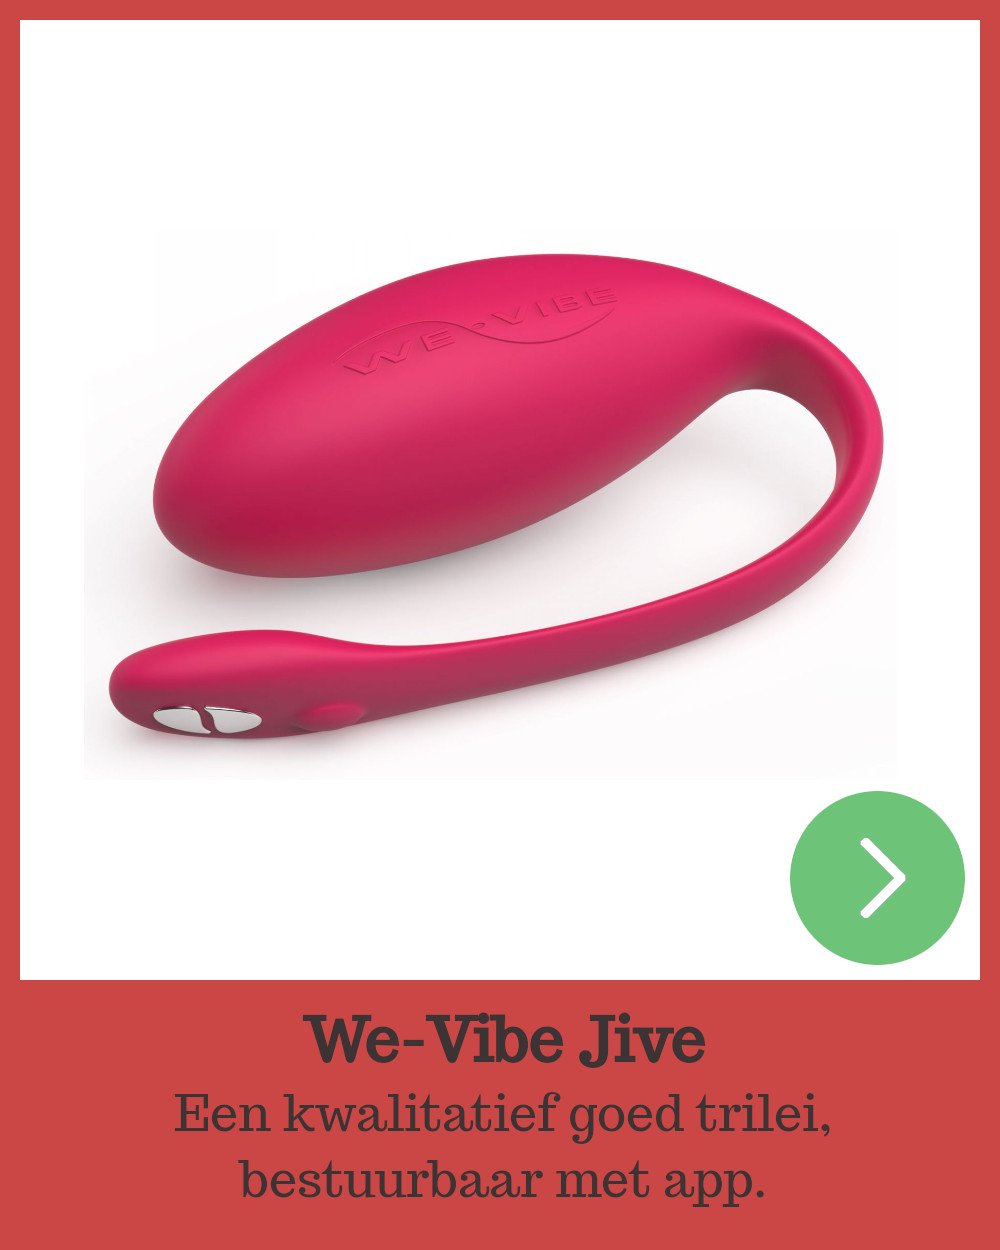 We-Vibe Jive: Kwalitatief goed trilei met app.